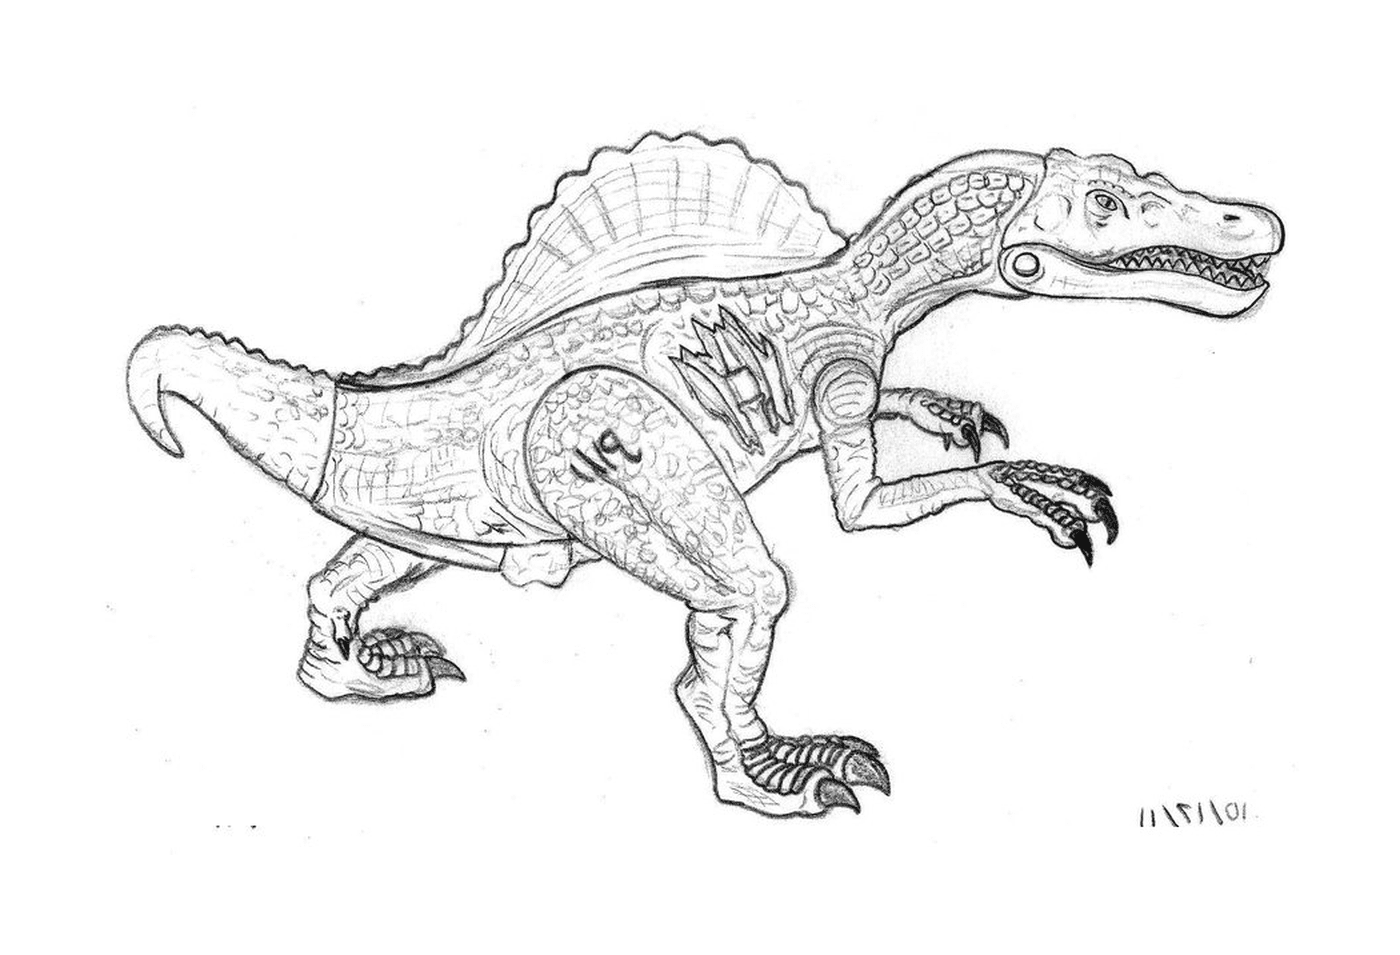  Spinosaurus aus Jurassic Park, schwarz und weiß 